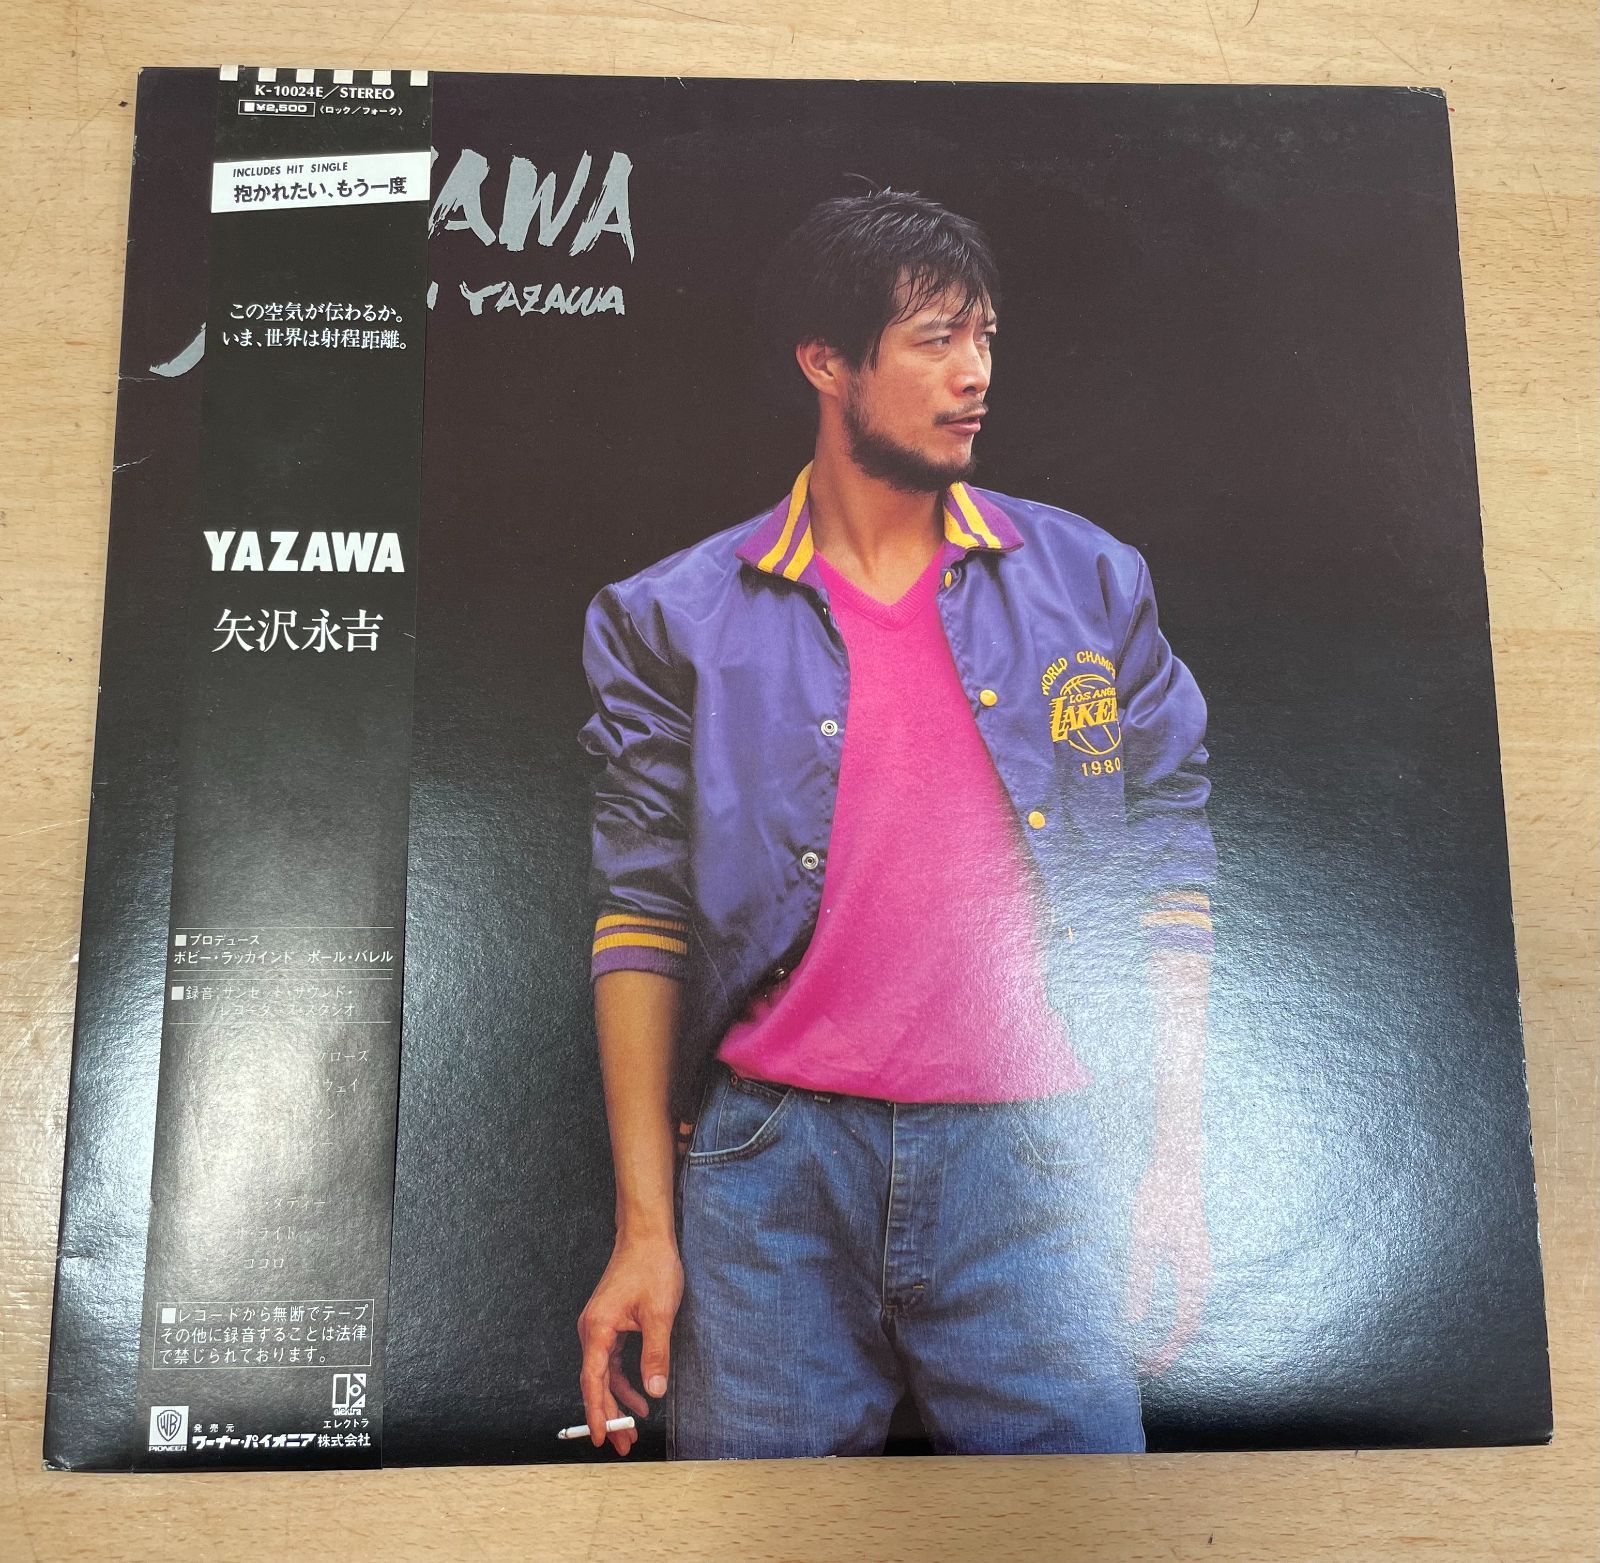 矢沢永吉LPレコード「YAZAWA」です。 - 邦楽